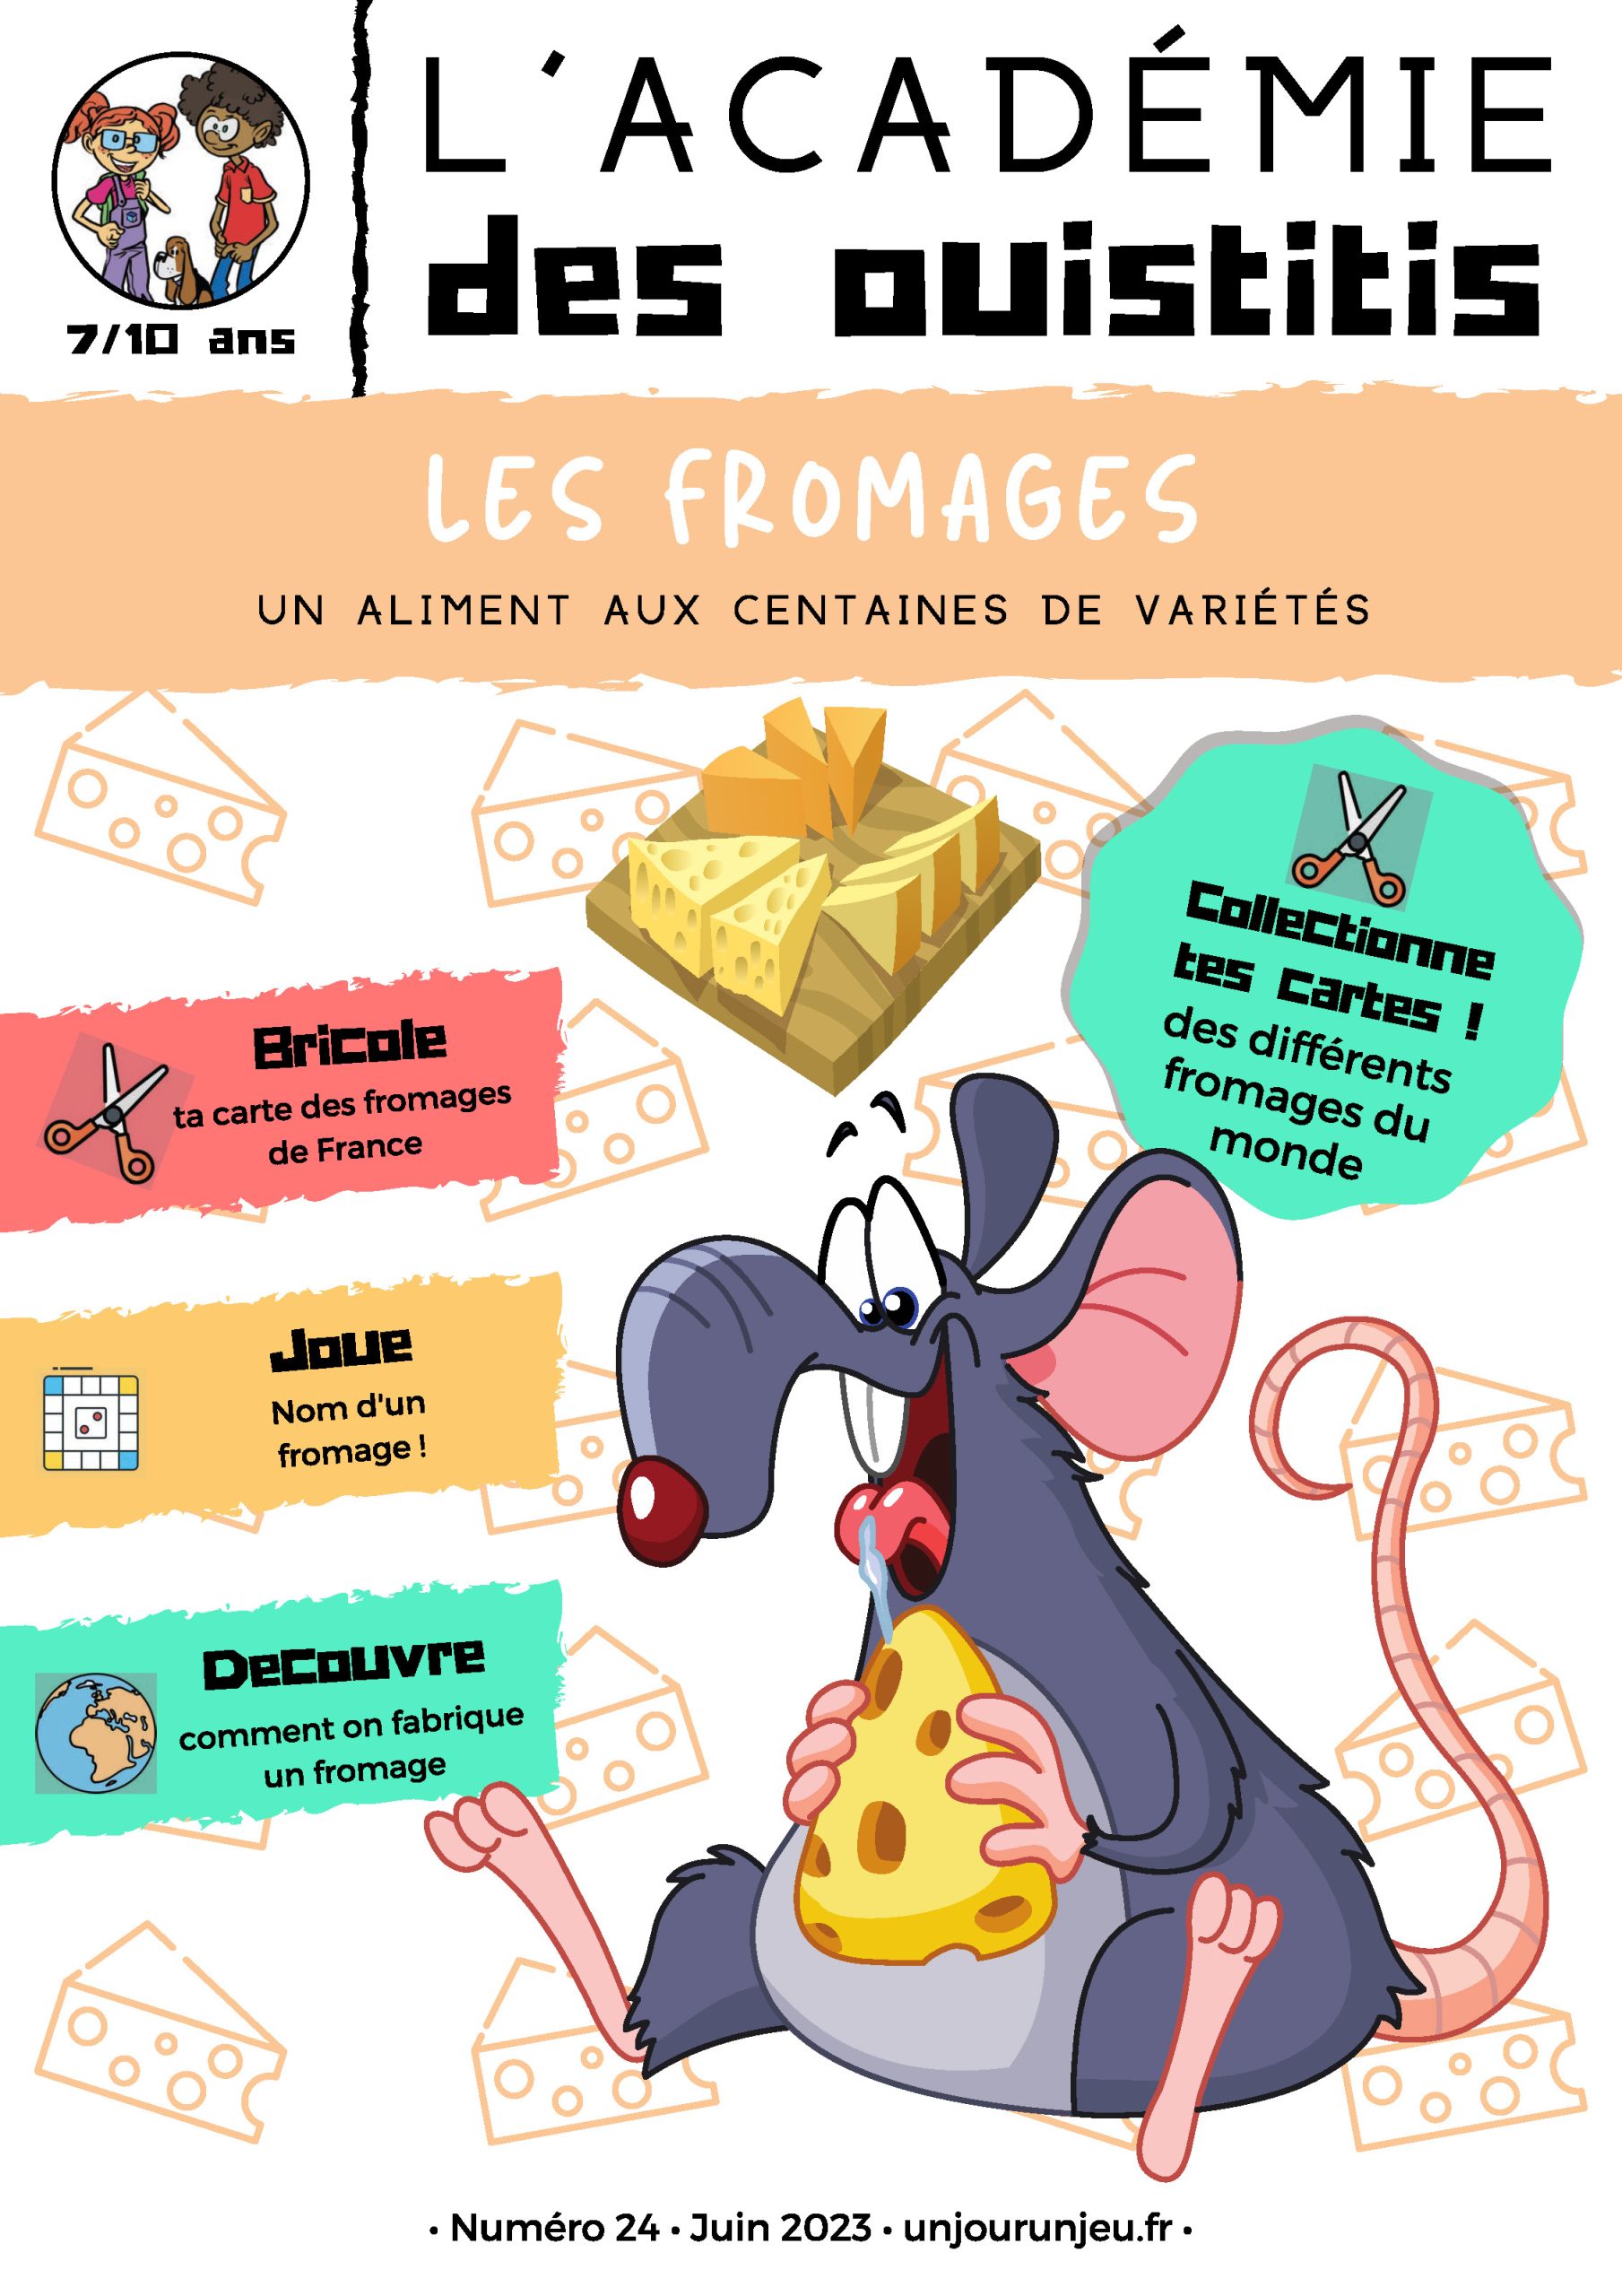 L'Académie des Ouistitis et la fabrication de fromages